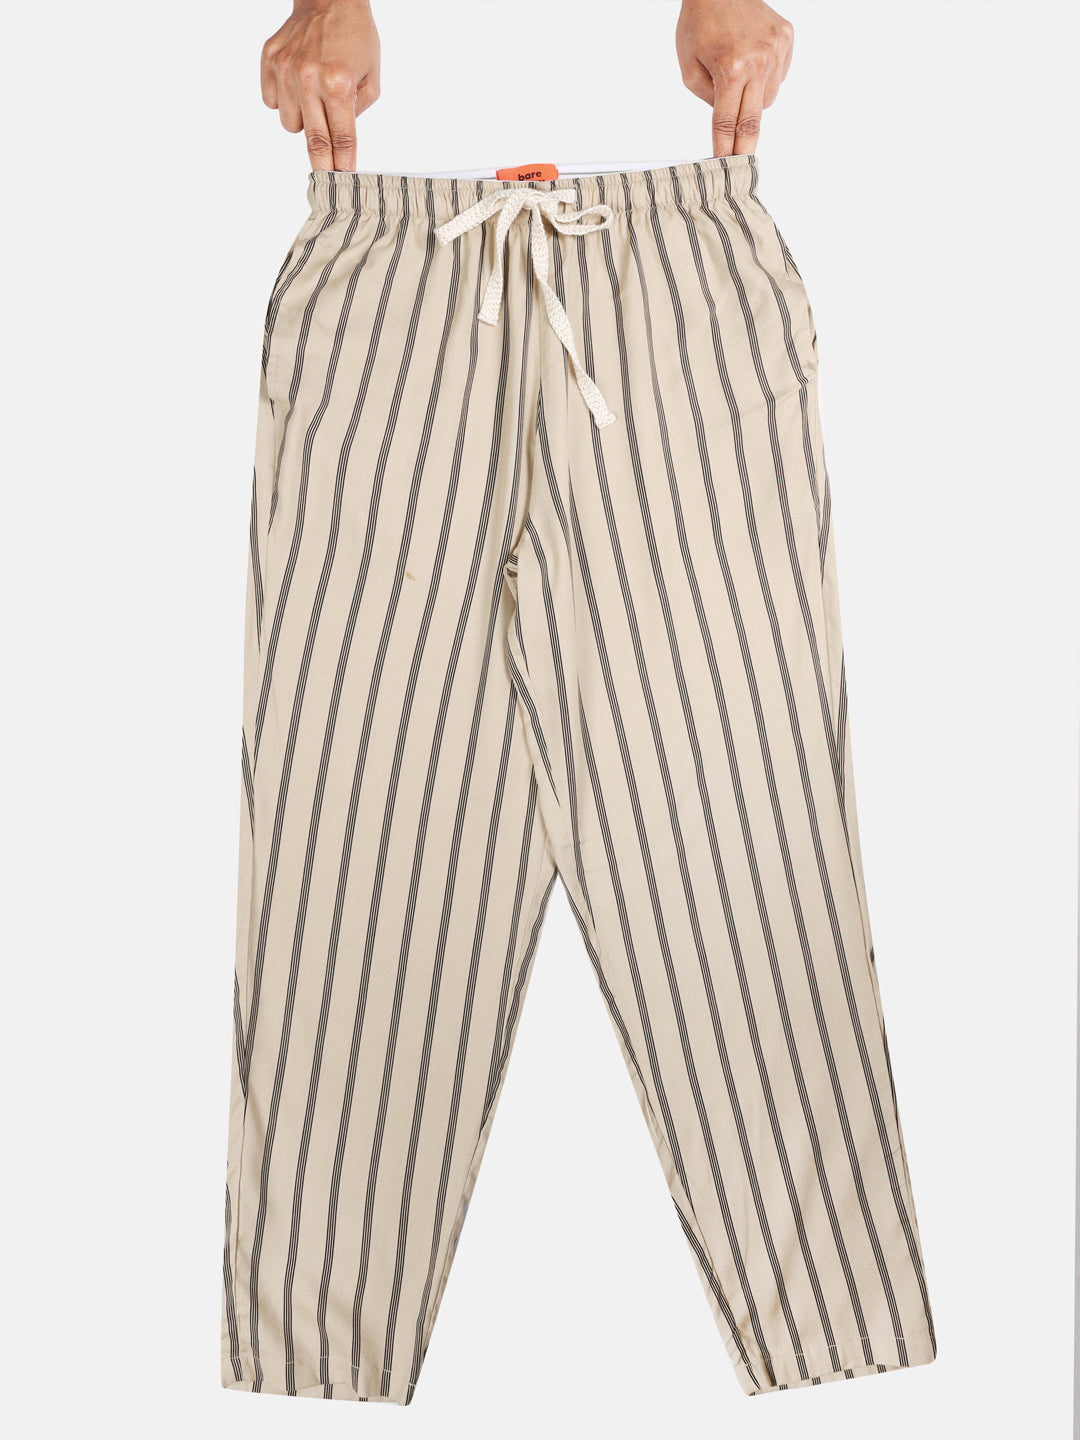 The Who Drew My Stripes Women PJ Pants